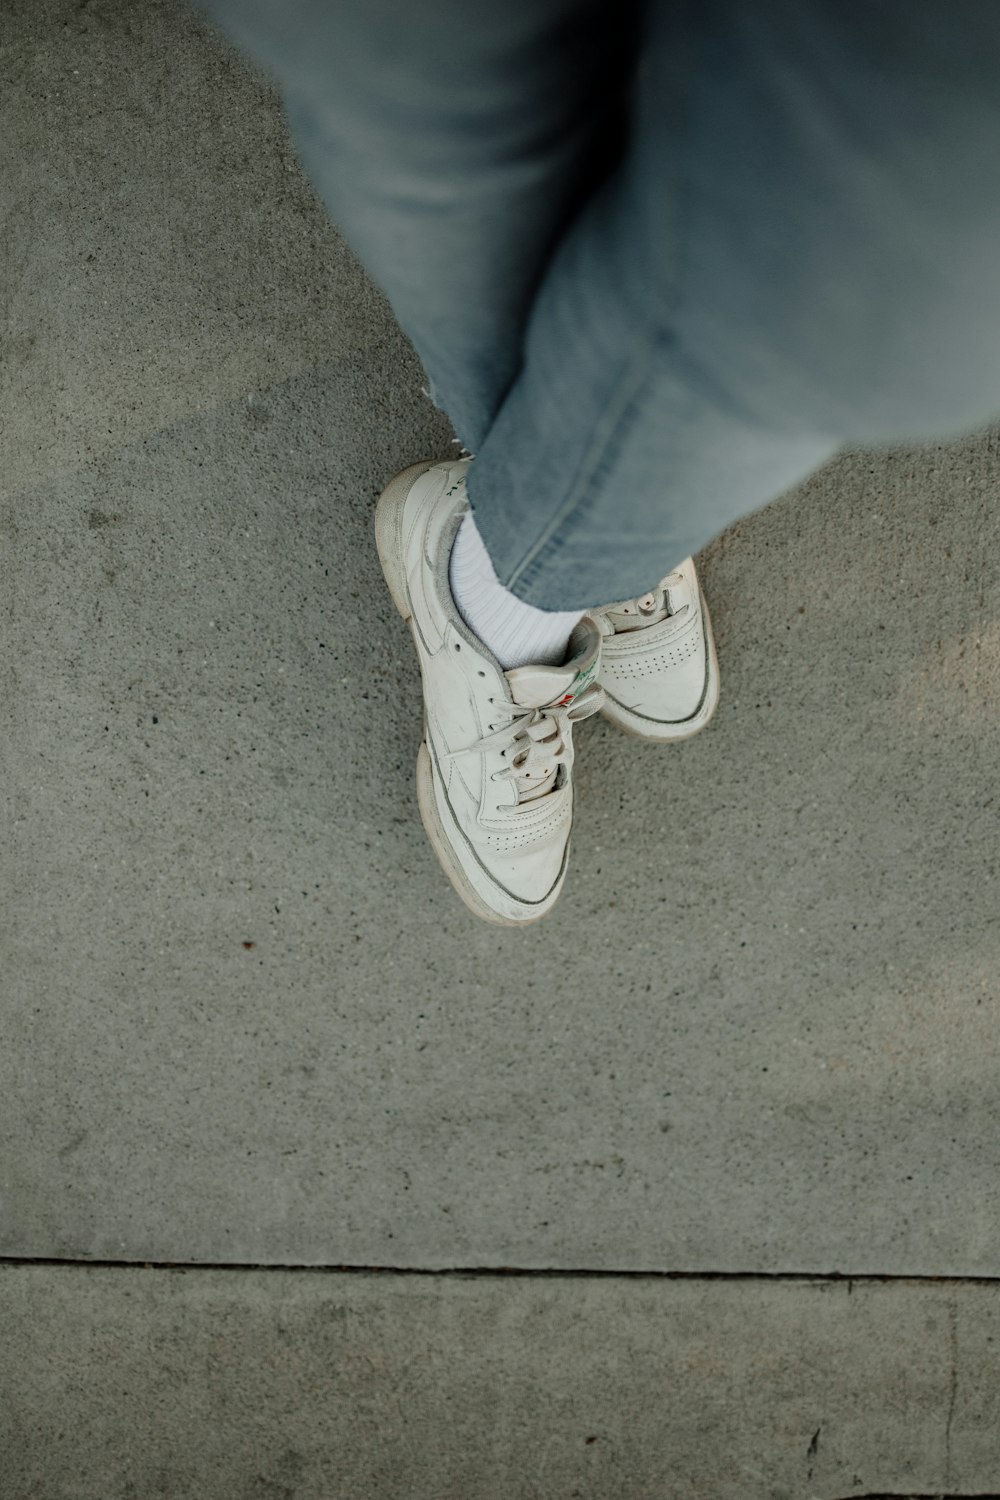 uma pessoa em pé em uma calçada usando sapatos brancos